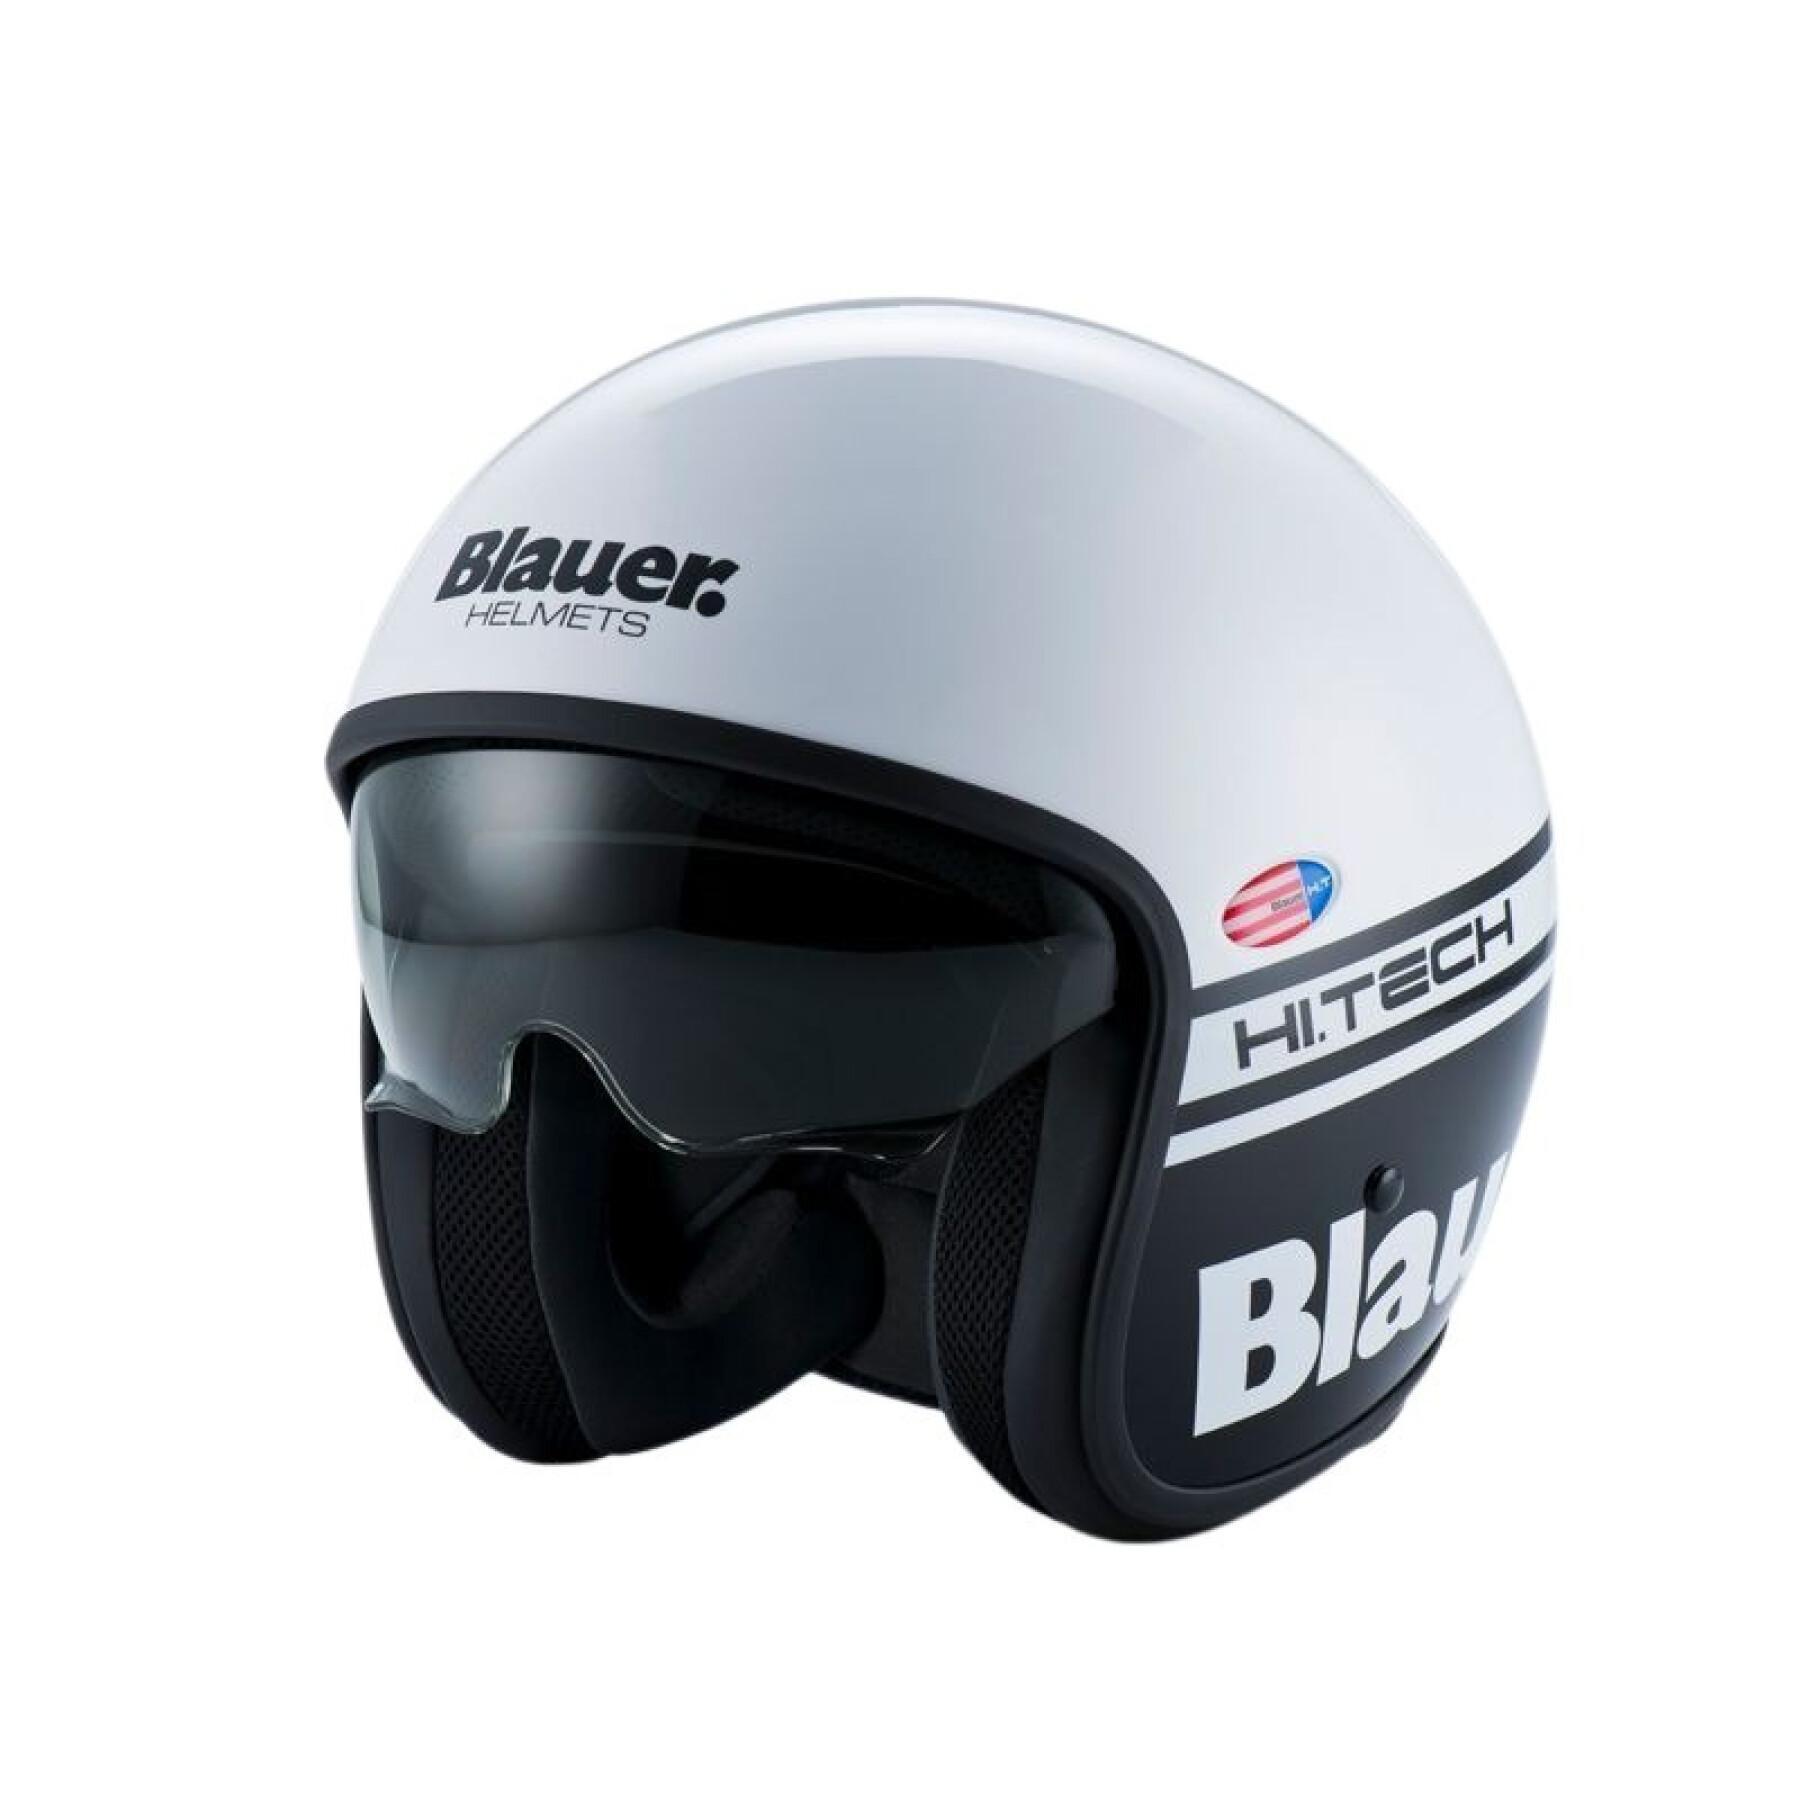 Jet motorcycle helmet Blauer pilot